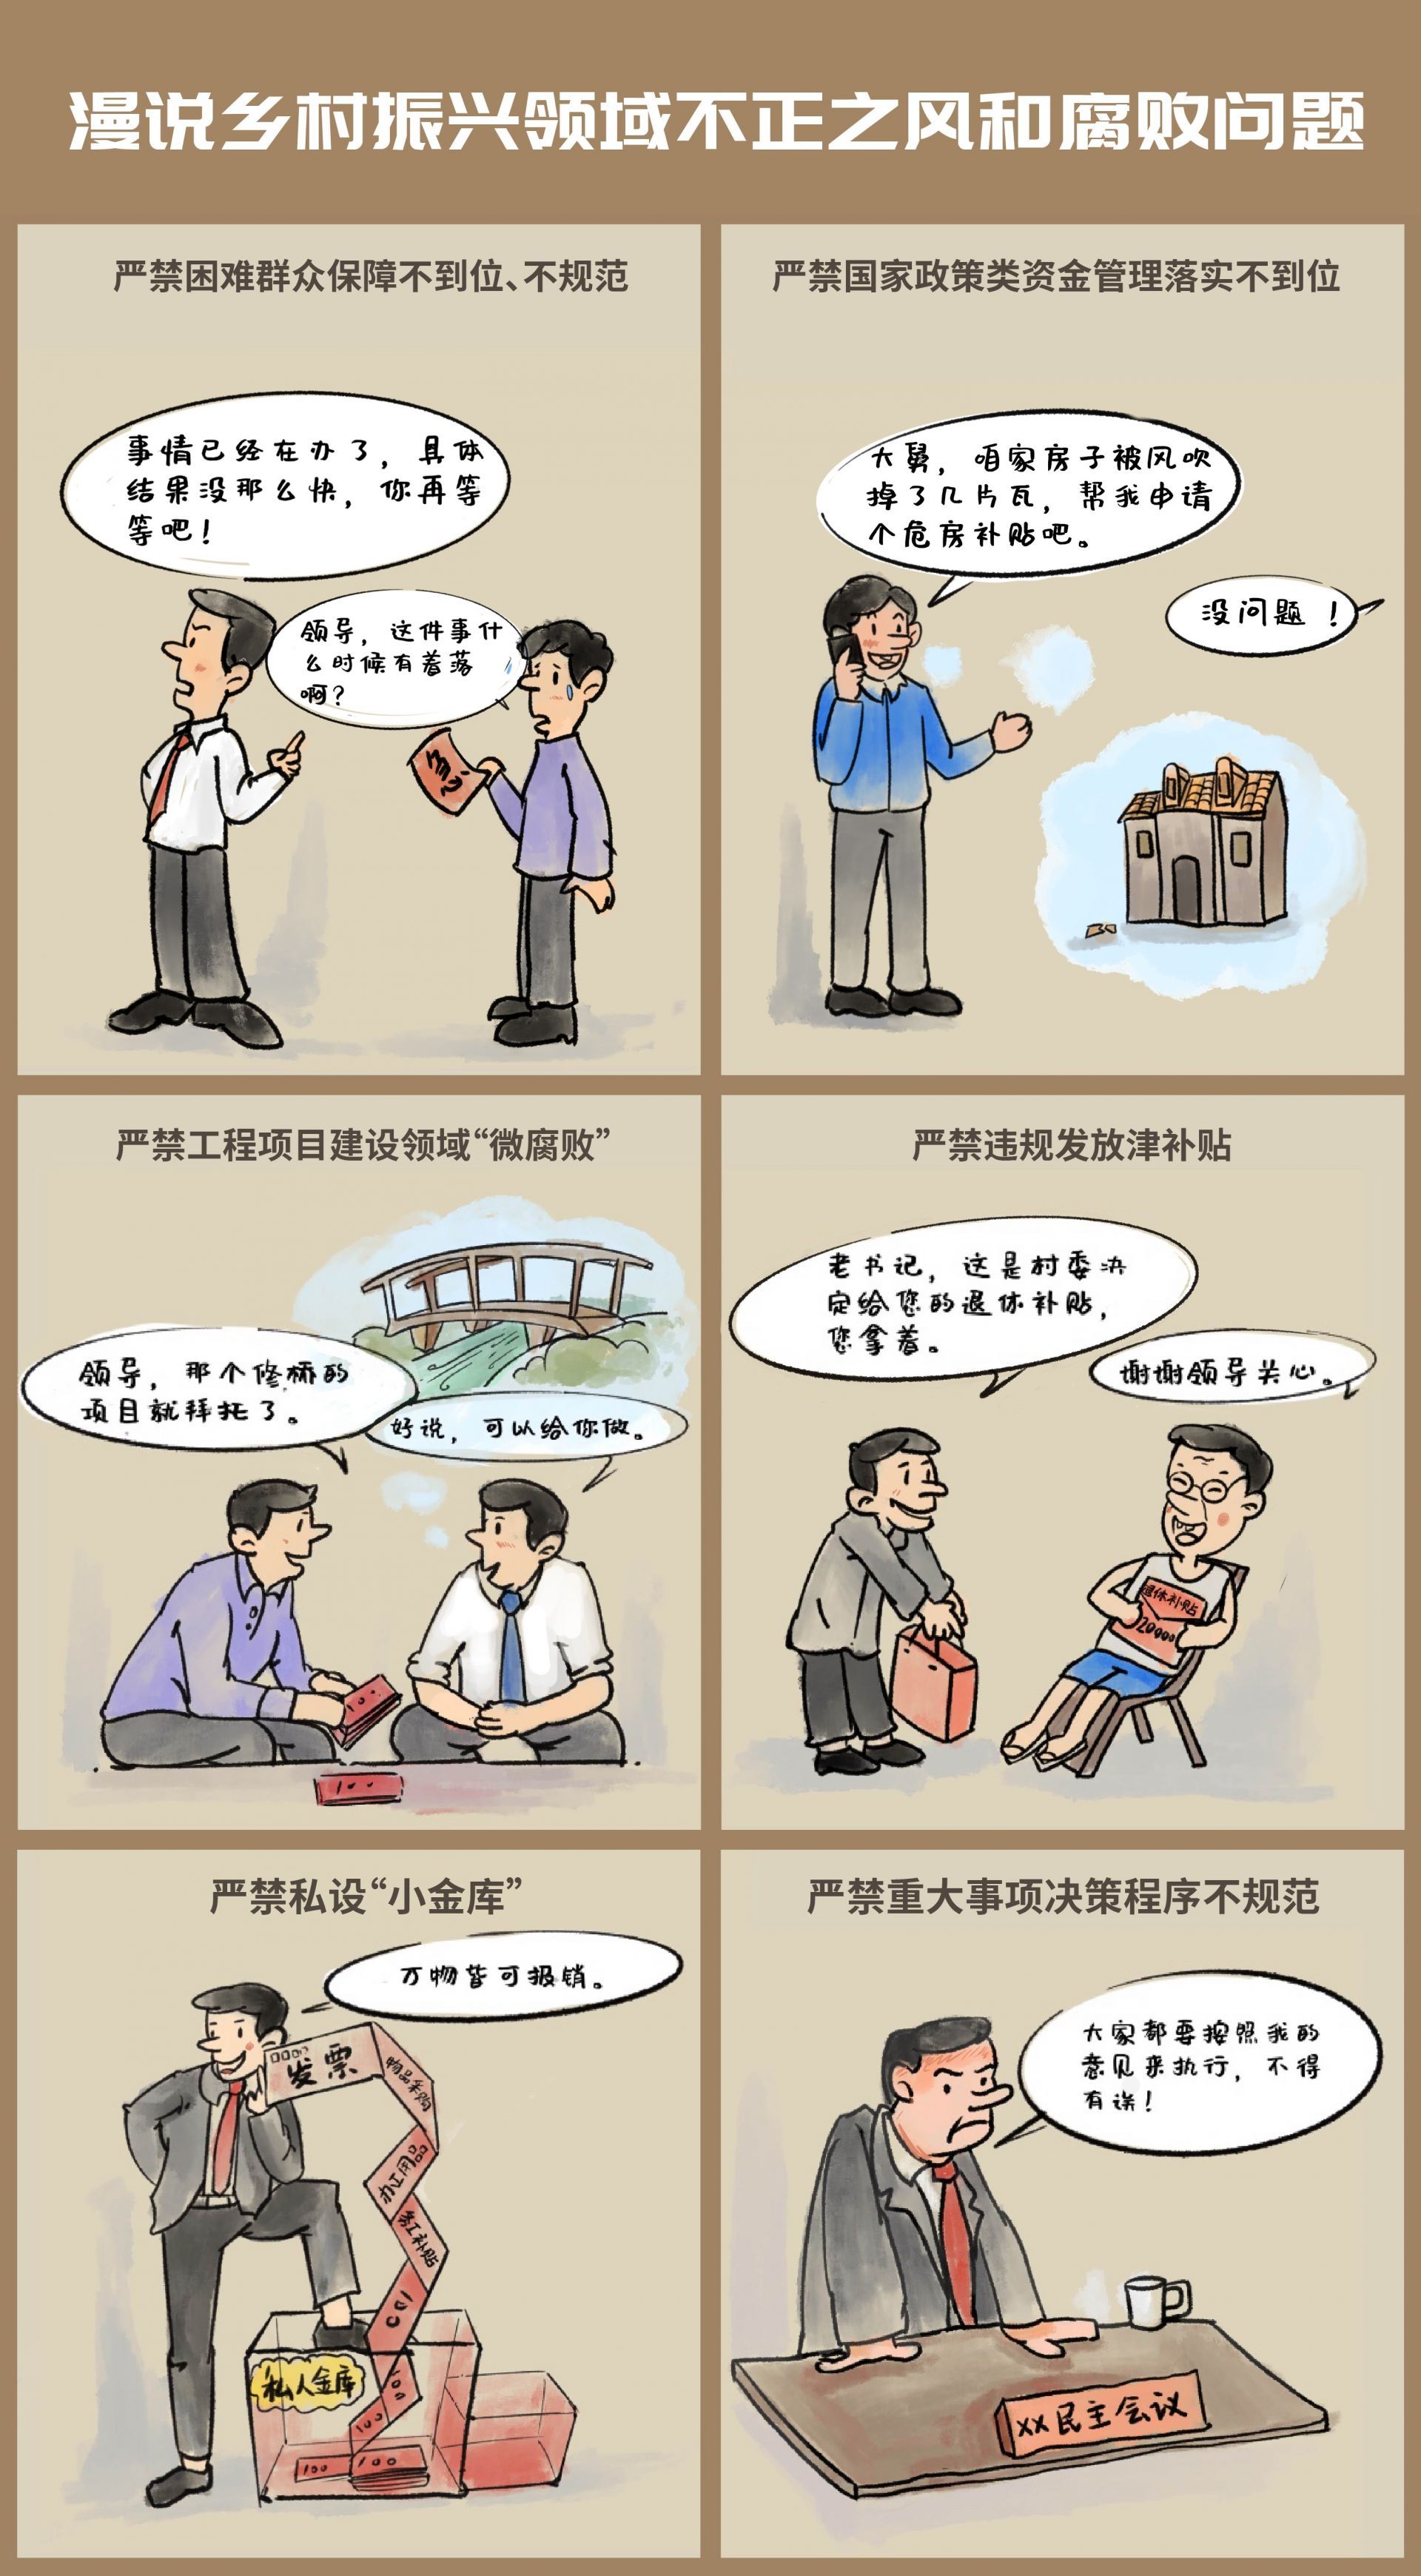 【廉政漫画】漫说乡村振兴领域不正之风和腐败问题